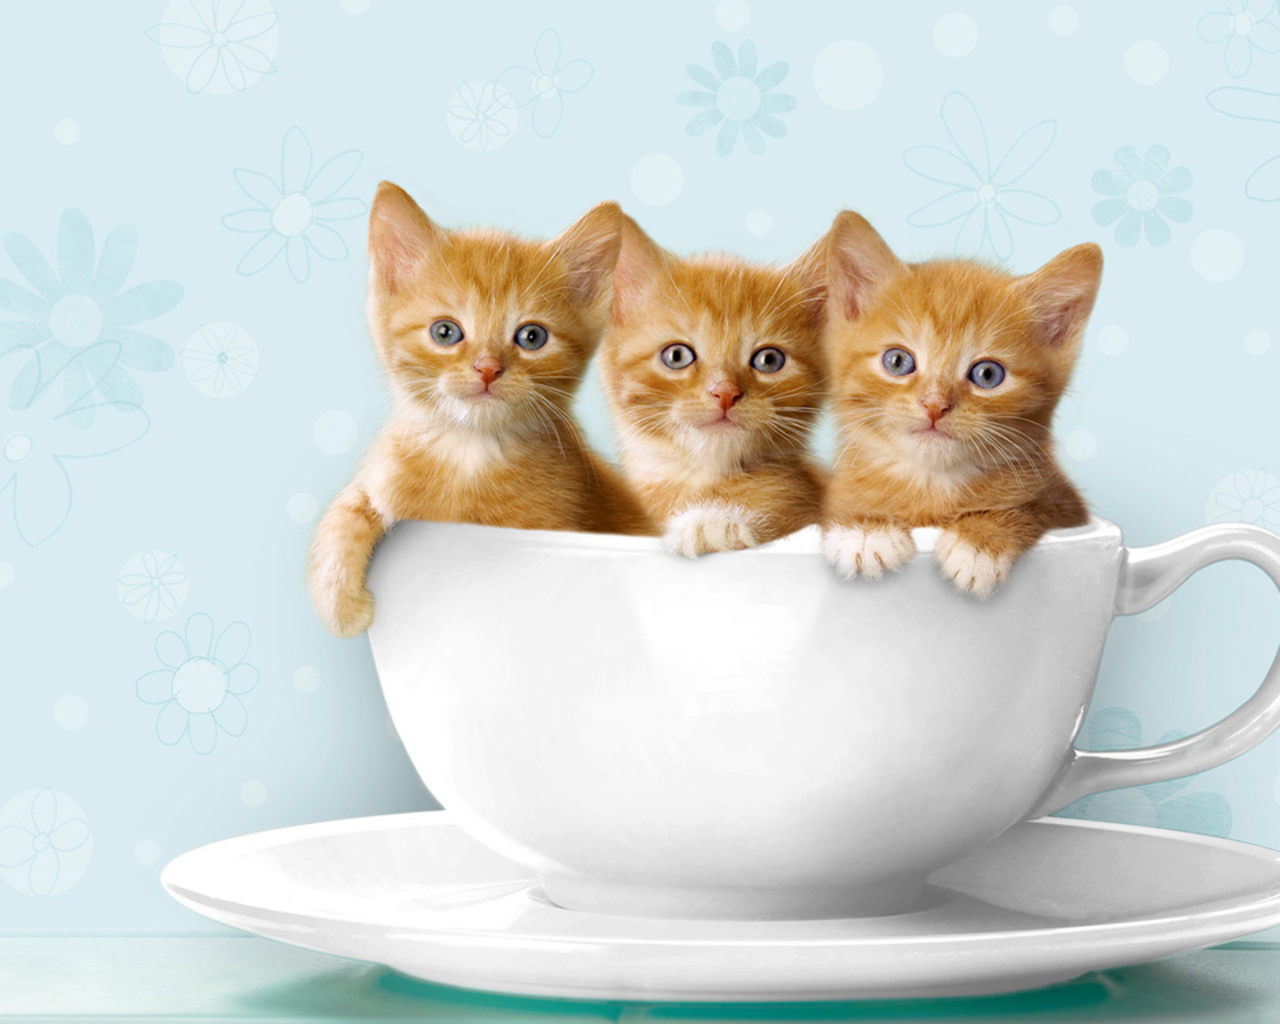 teacup-kittens2.jpg